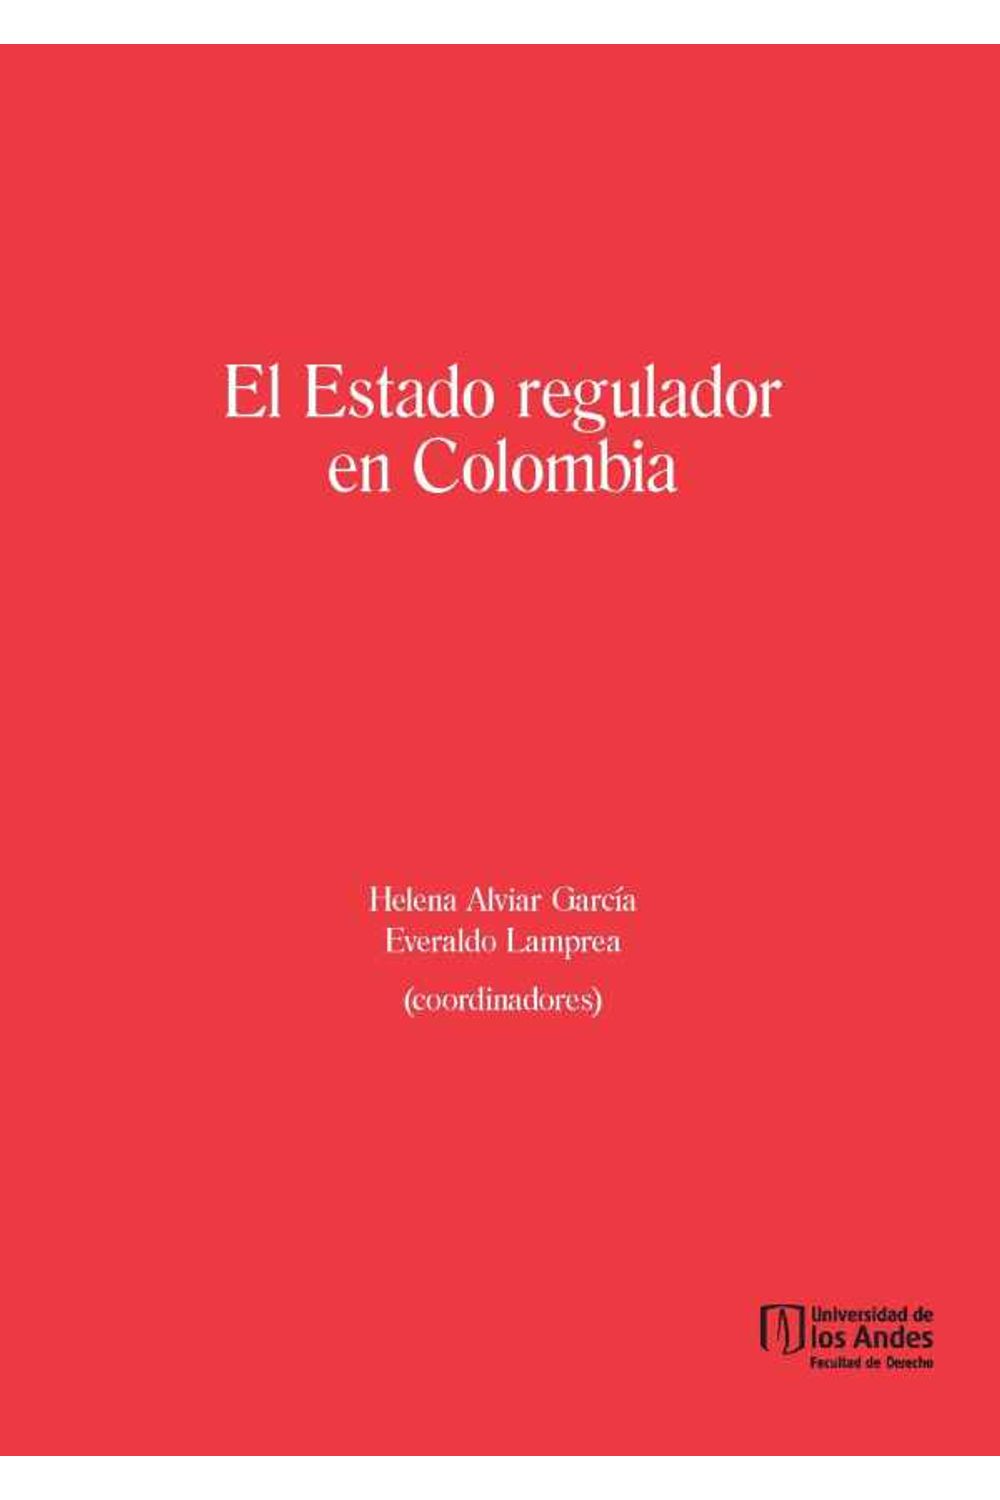 bw-el-estado-regulador-en-colombia-u-de-los-andes-9789587744064